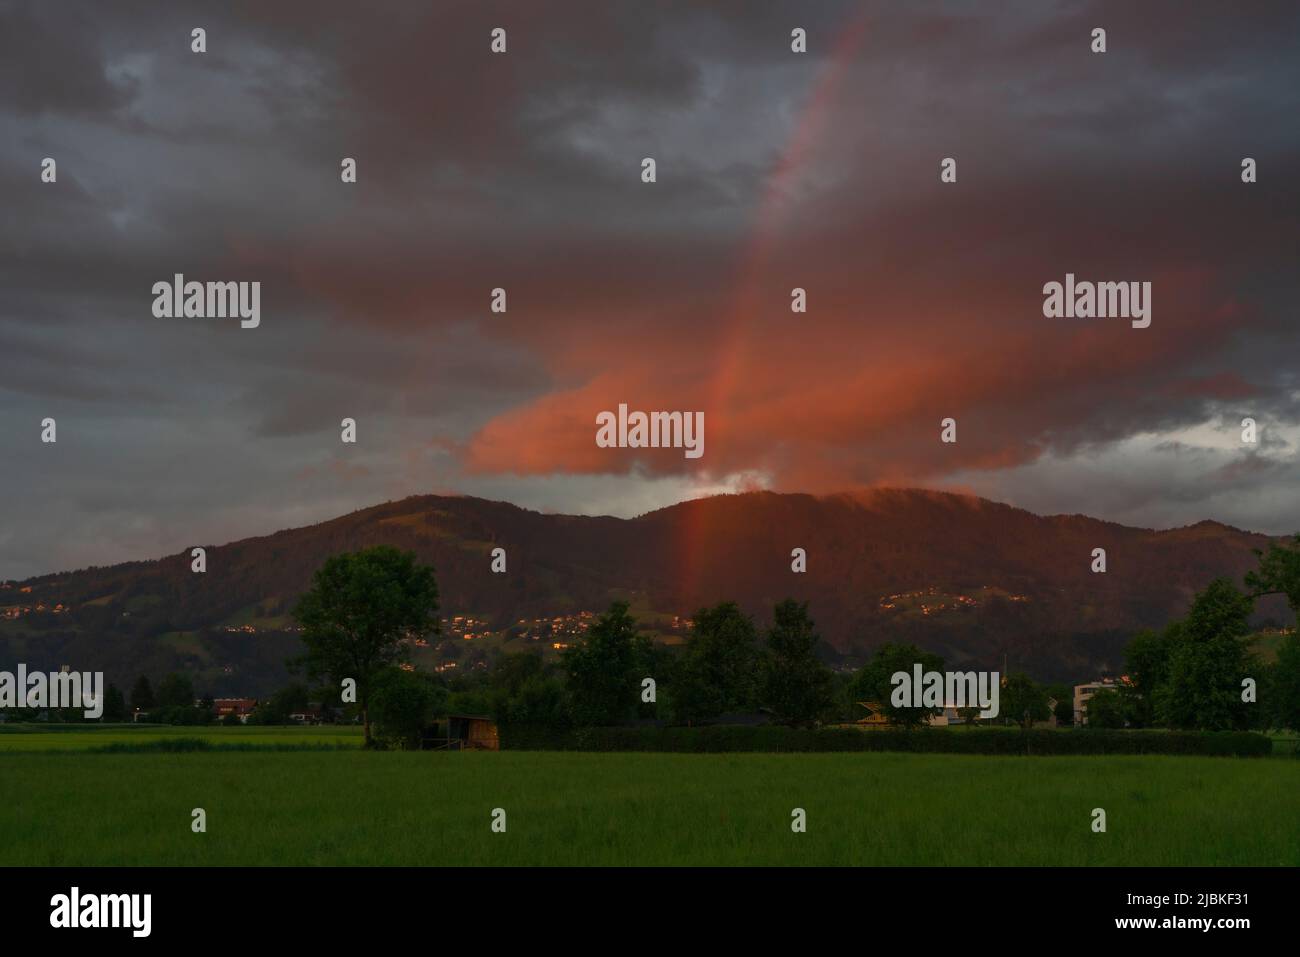 Leuchtendes Abendrot mit Regenbogen nach dem Sonnenuntergang in Dornbirn, Vorarlberg, Austria. rote und Graublaue Wolken über den grünen Wiesen Foto Stock